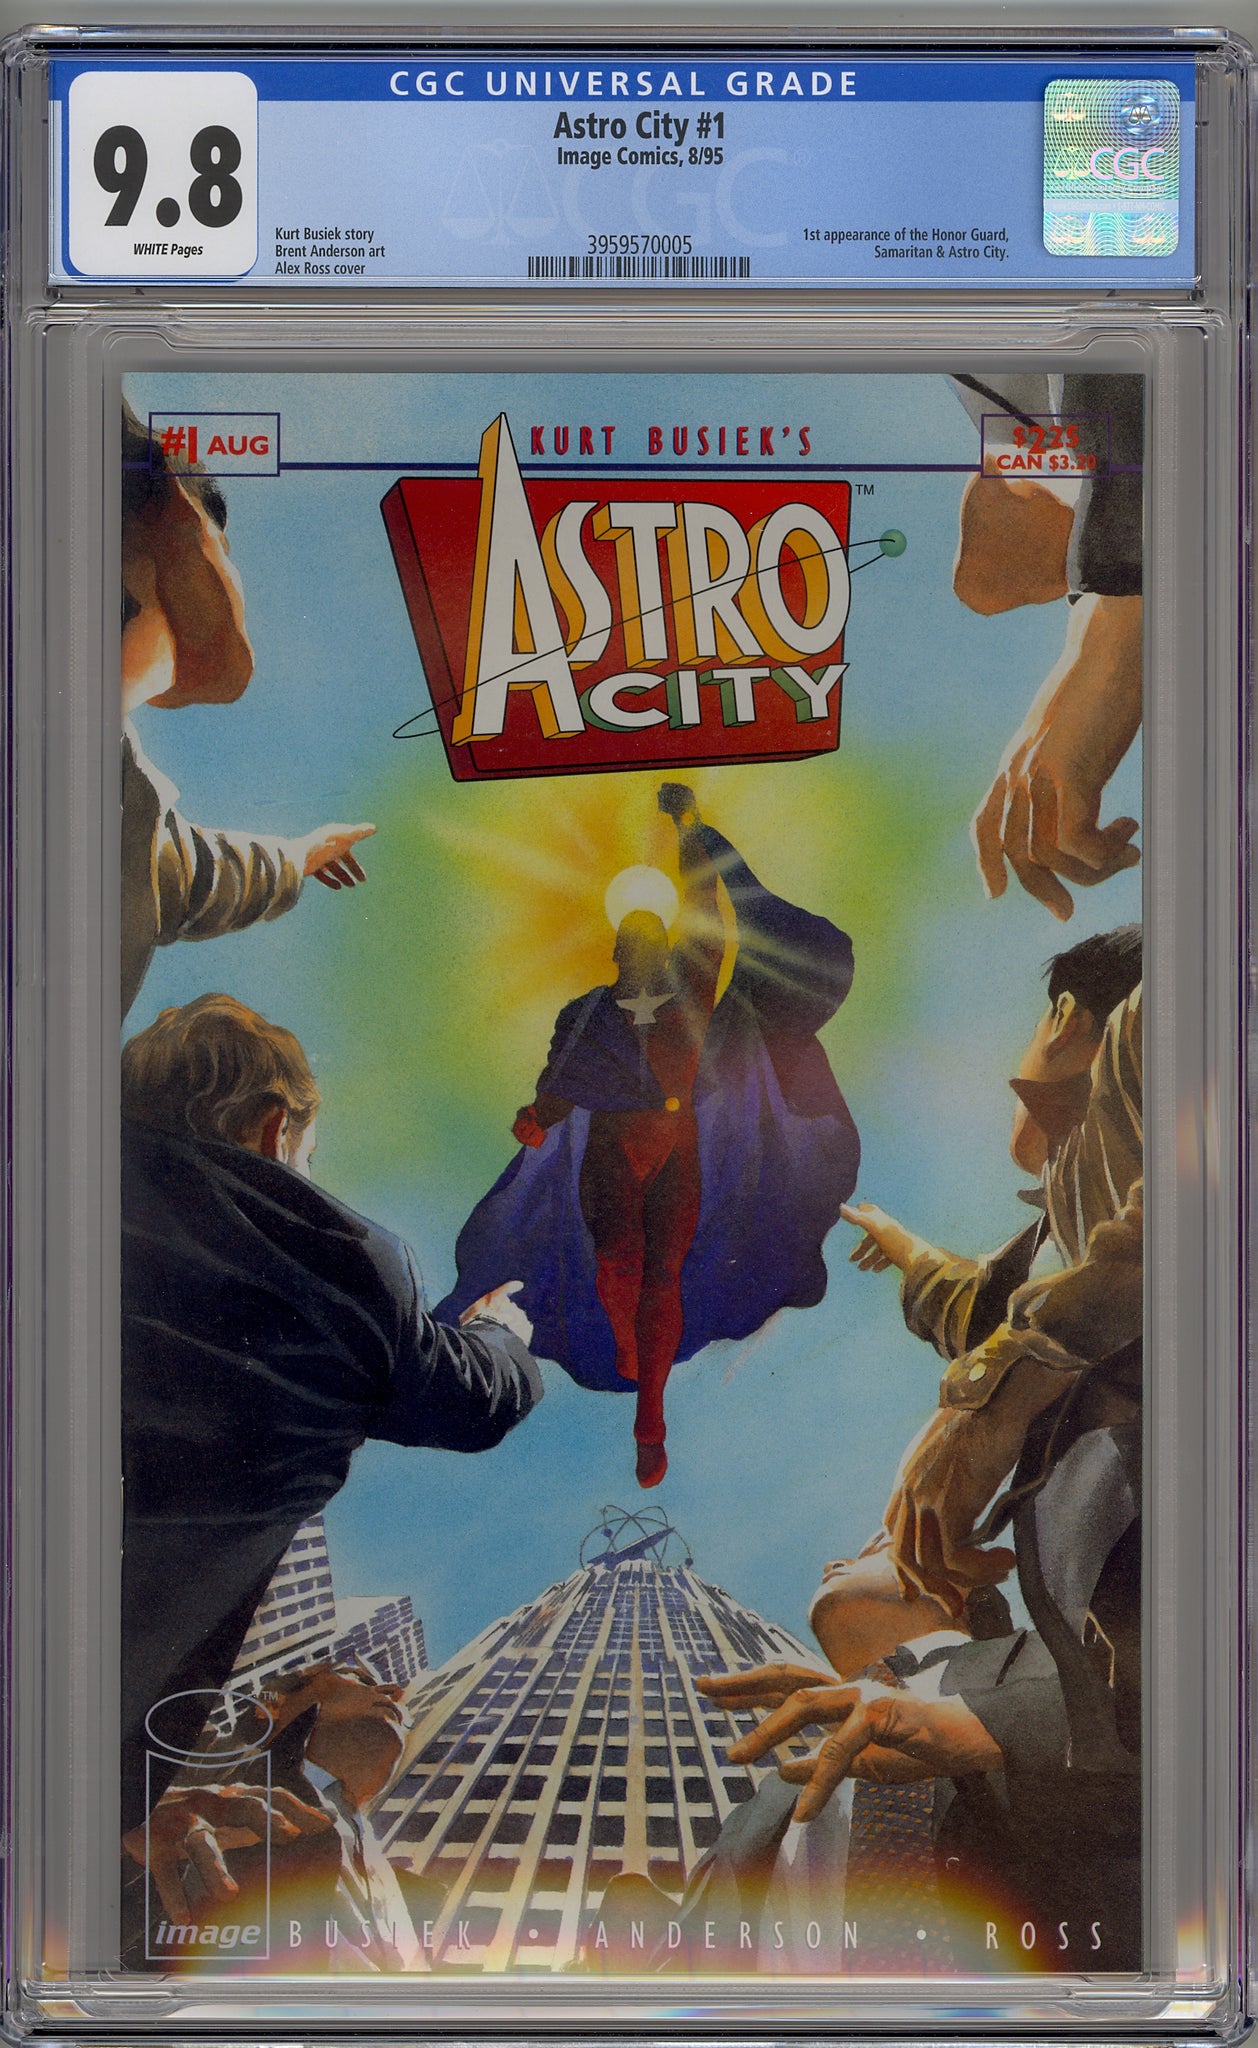 Astro City #1 (1995) Honor Guard, Samaritan